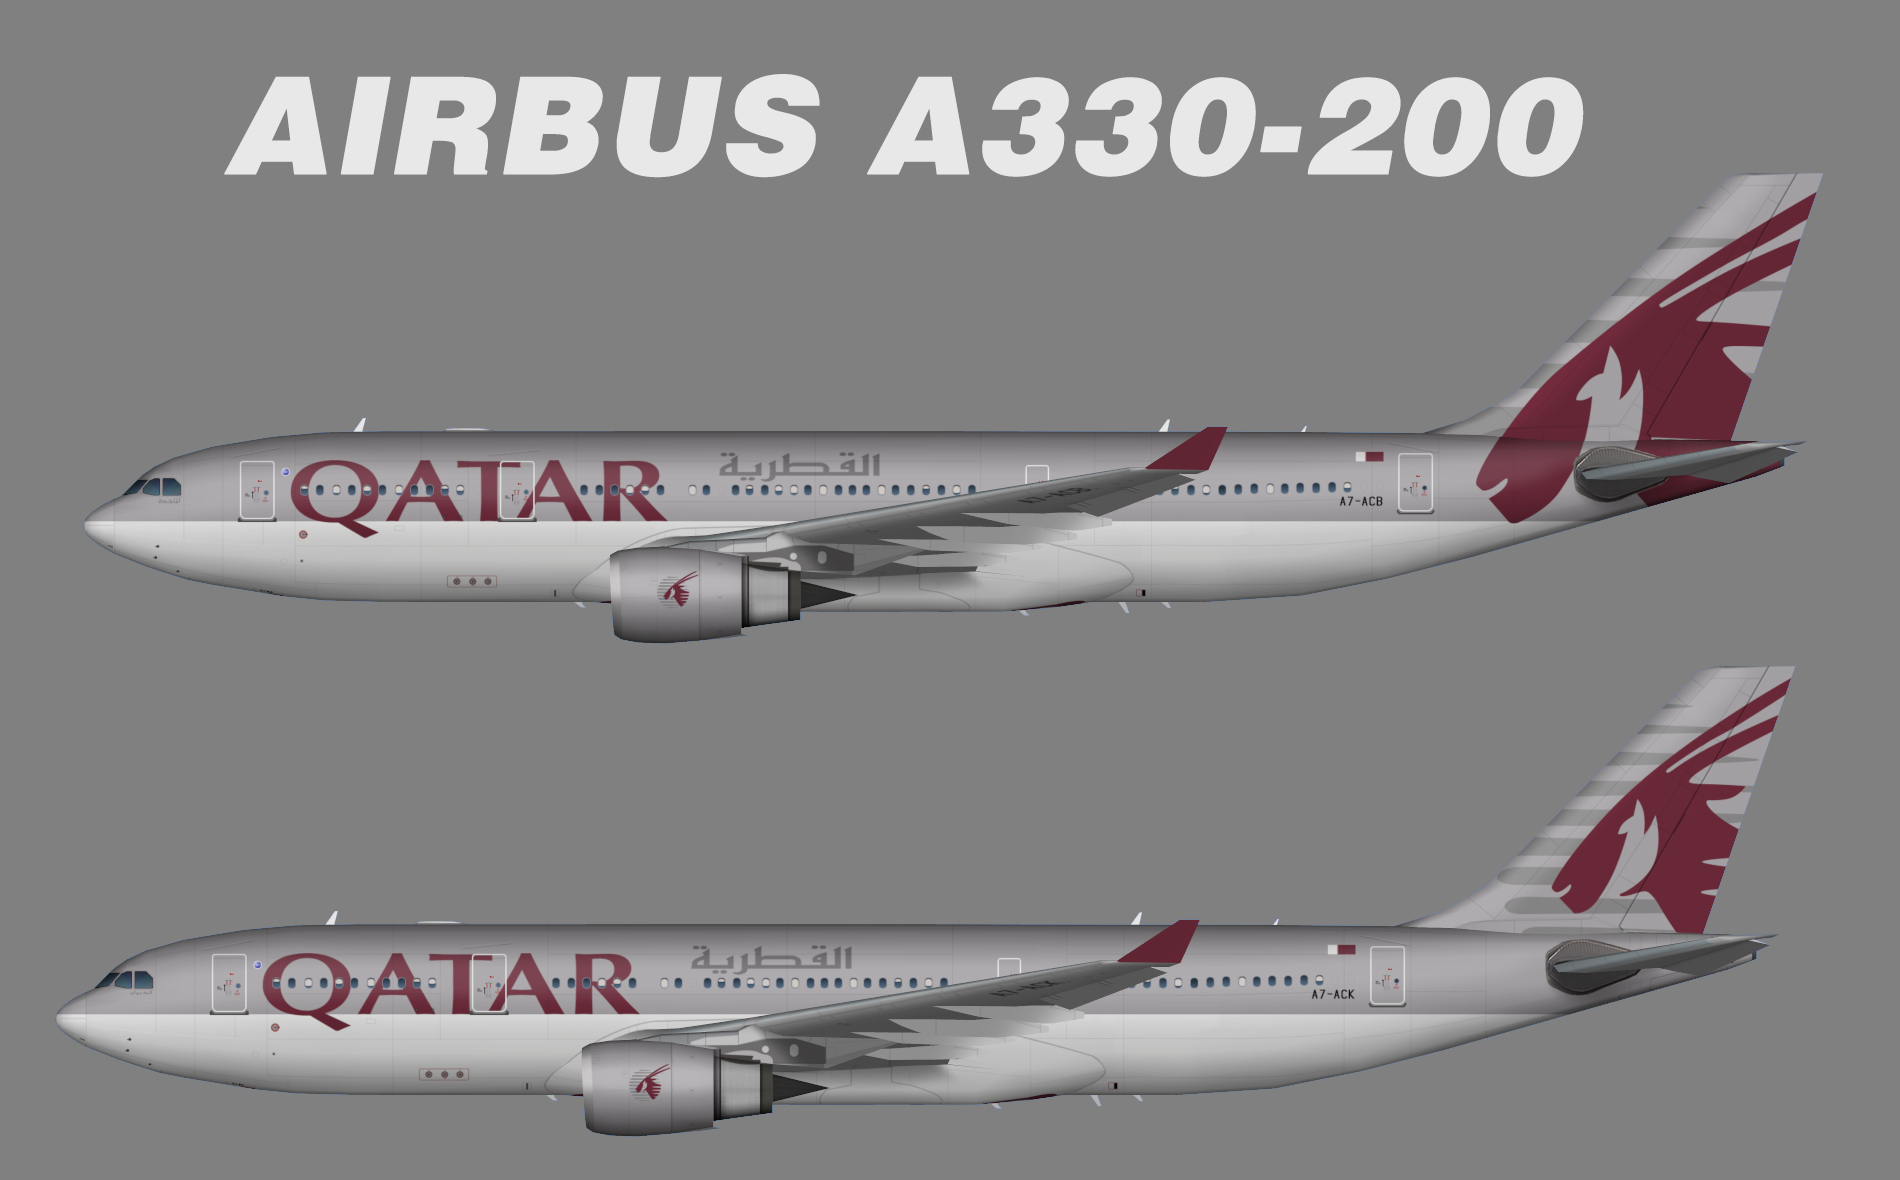 Airbus a330 200 схема